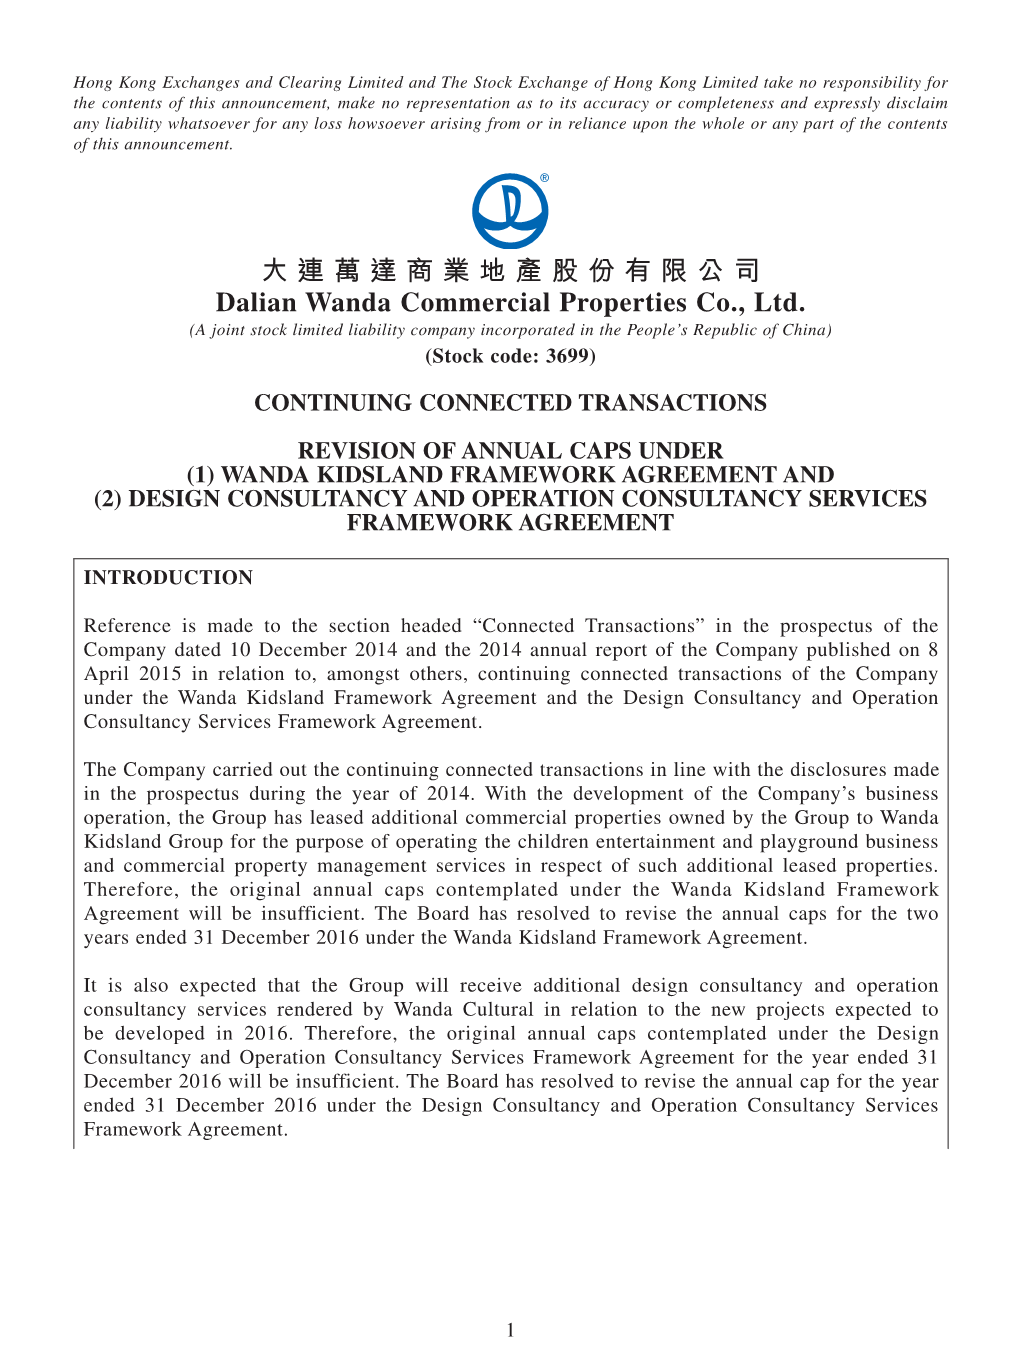 大連萬達商業地產股份有限公司 Dalian Wanda Commercial Properties Co., Ltd